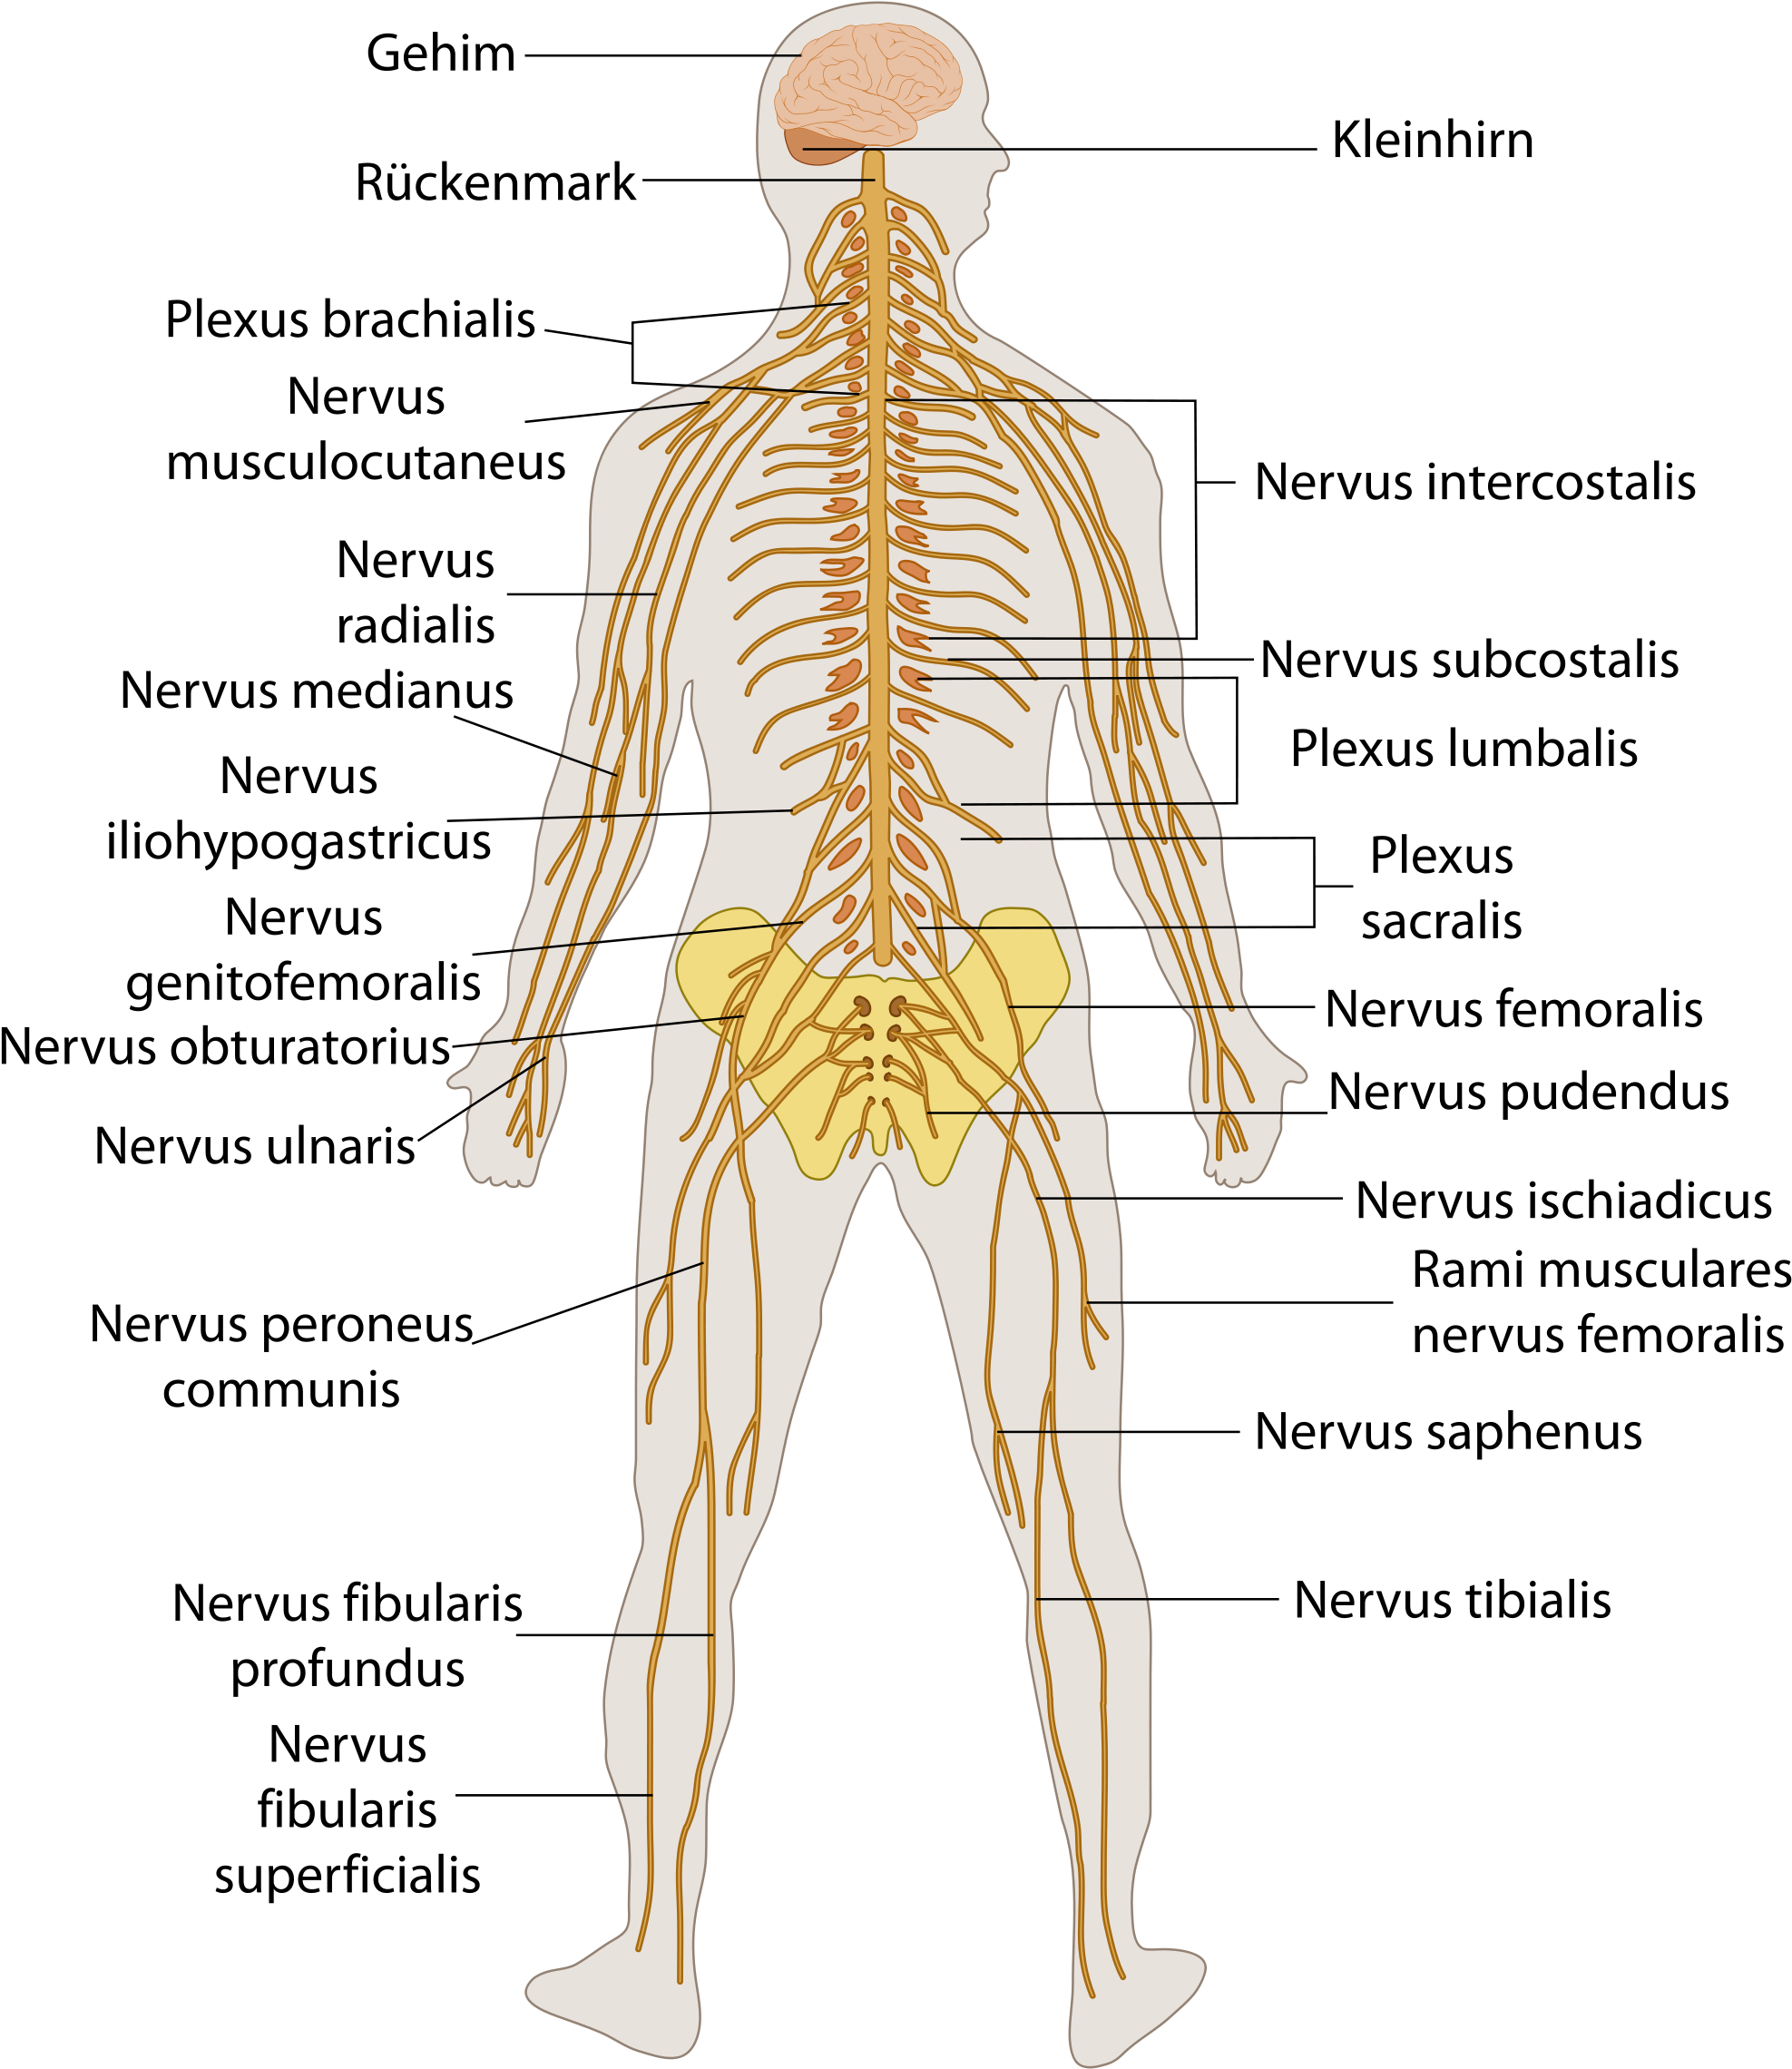 nervous-system-diagram-nervous-system-graph-diagram-the-central-nervous-system-the